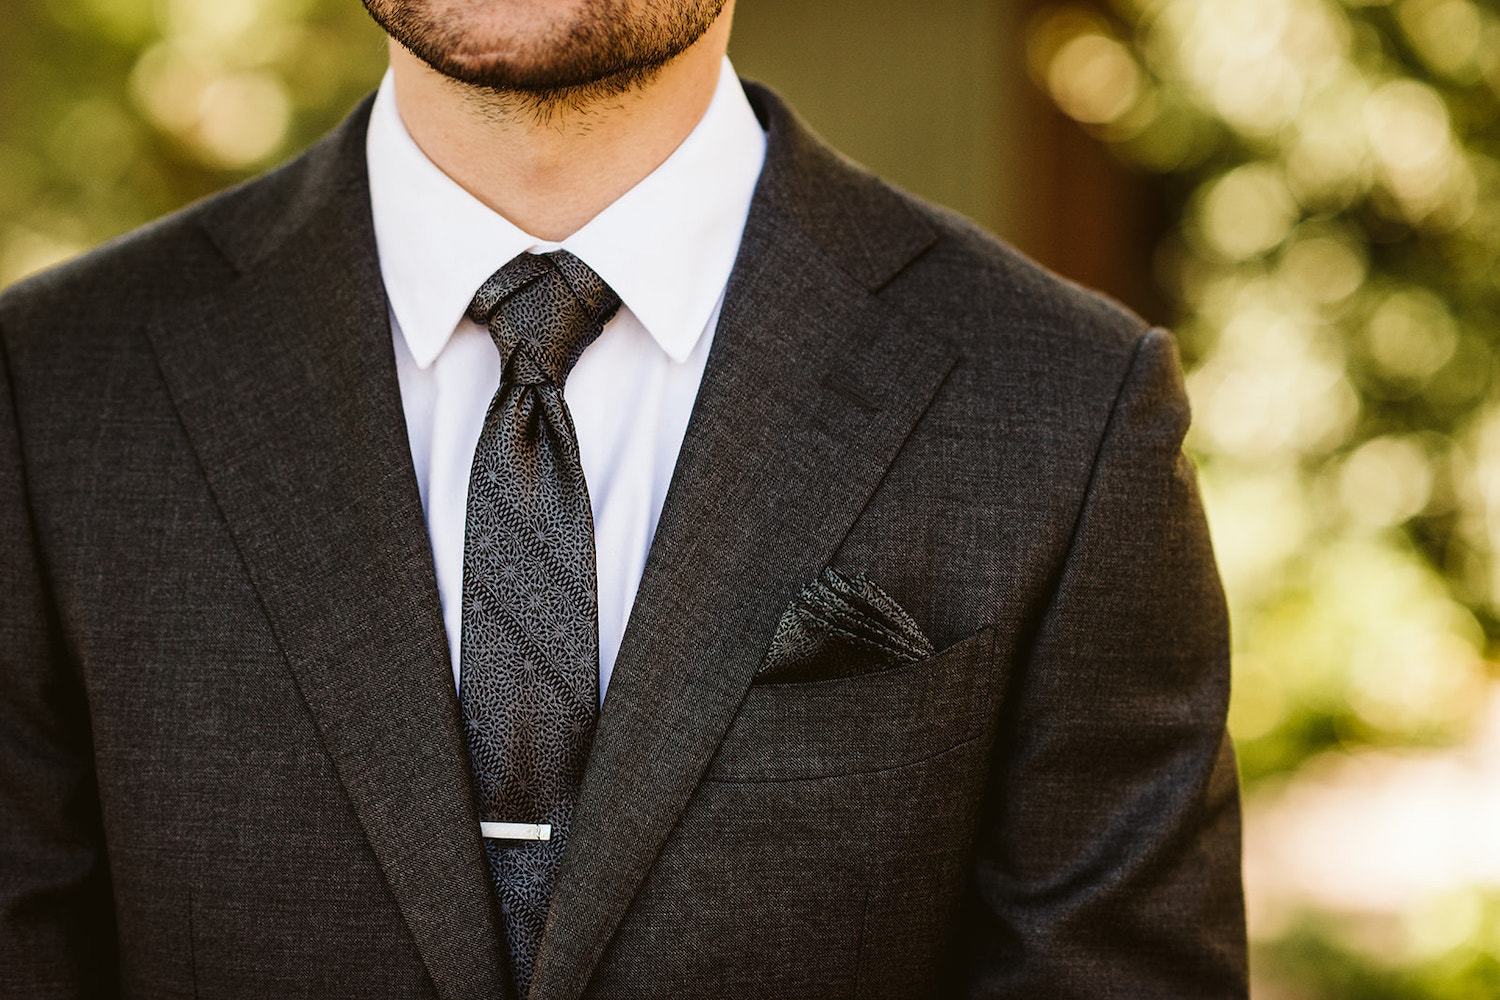 groom's dark suit and tie